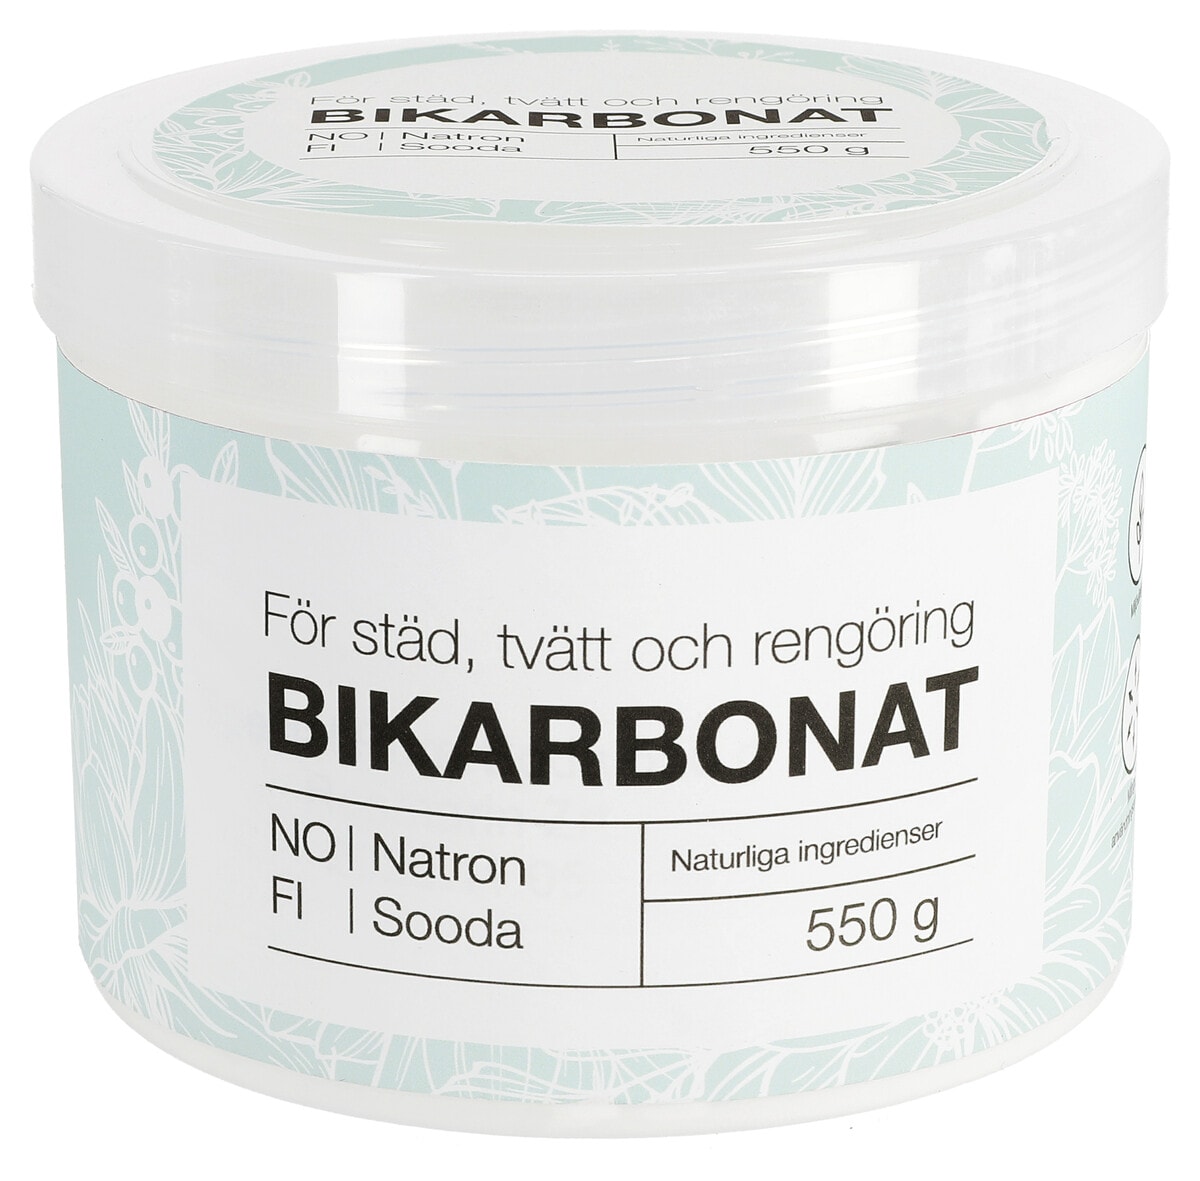 Clas Ohlson Bikarbonat 550 g